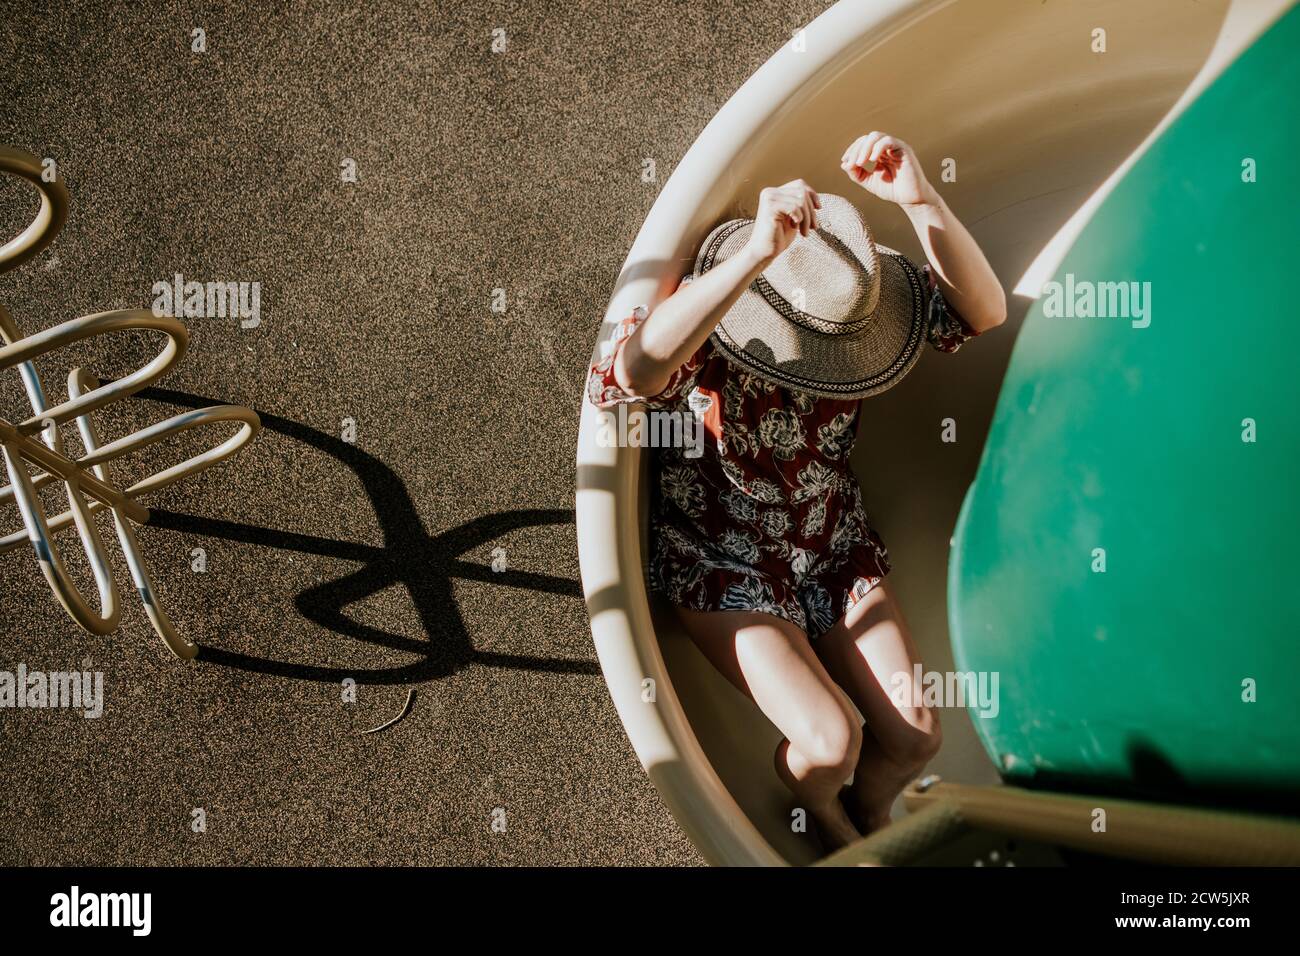 vue de dessus d'une femme glissant vers le bas d'une glissière en spirale Banque D'Images